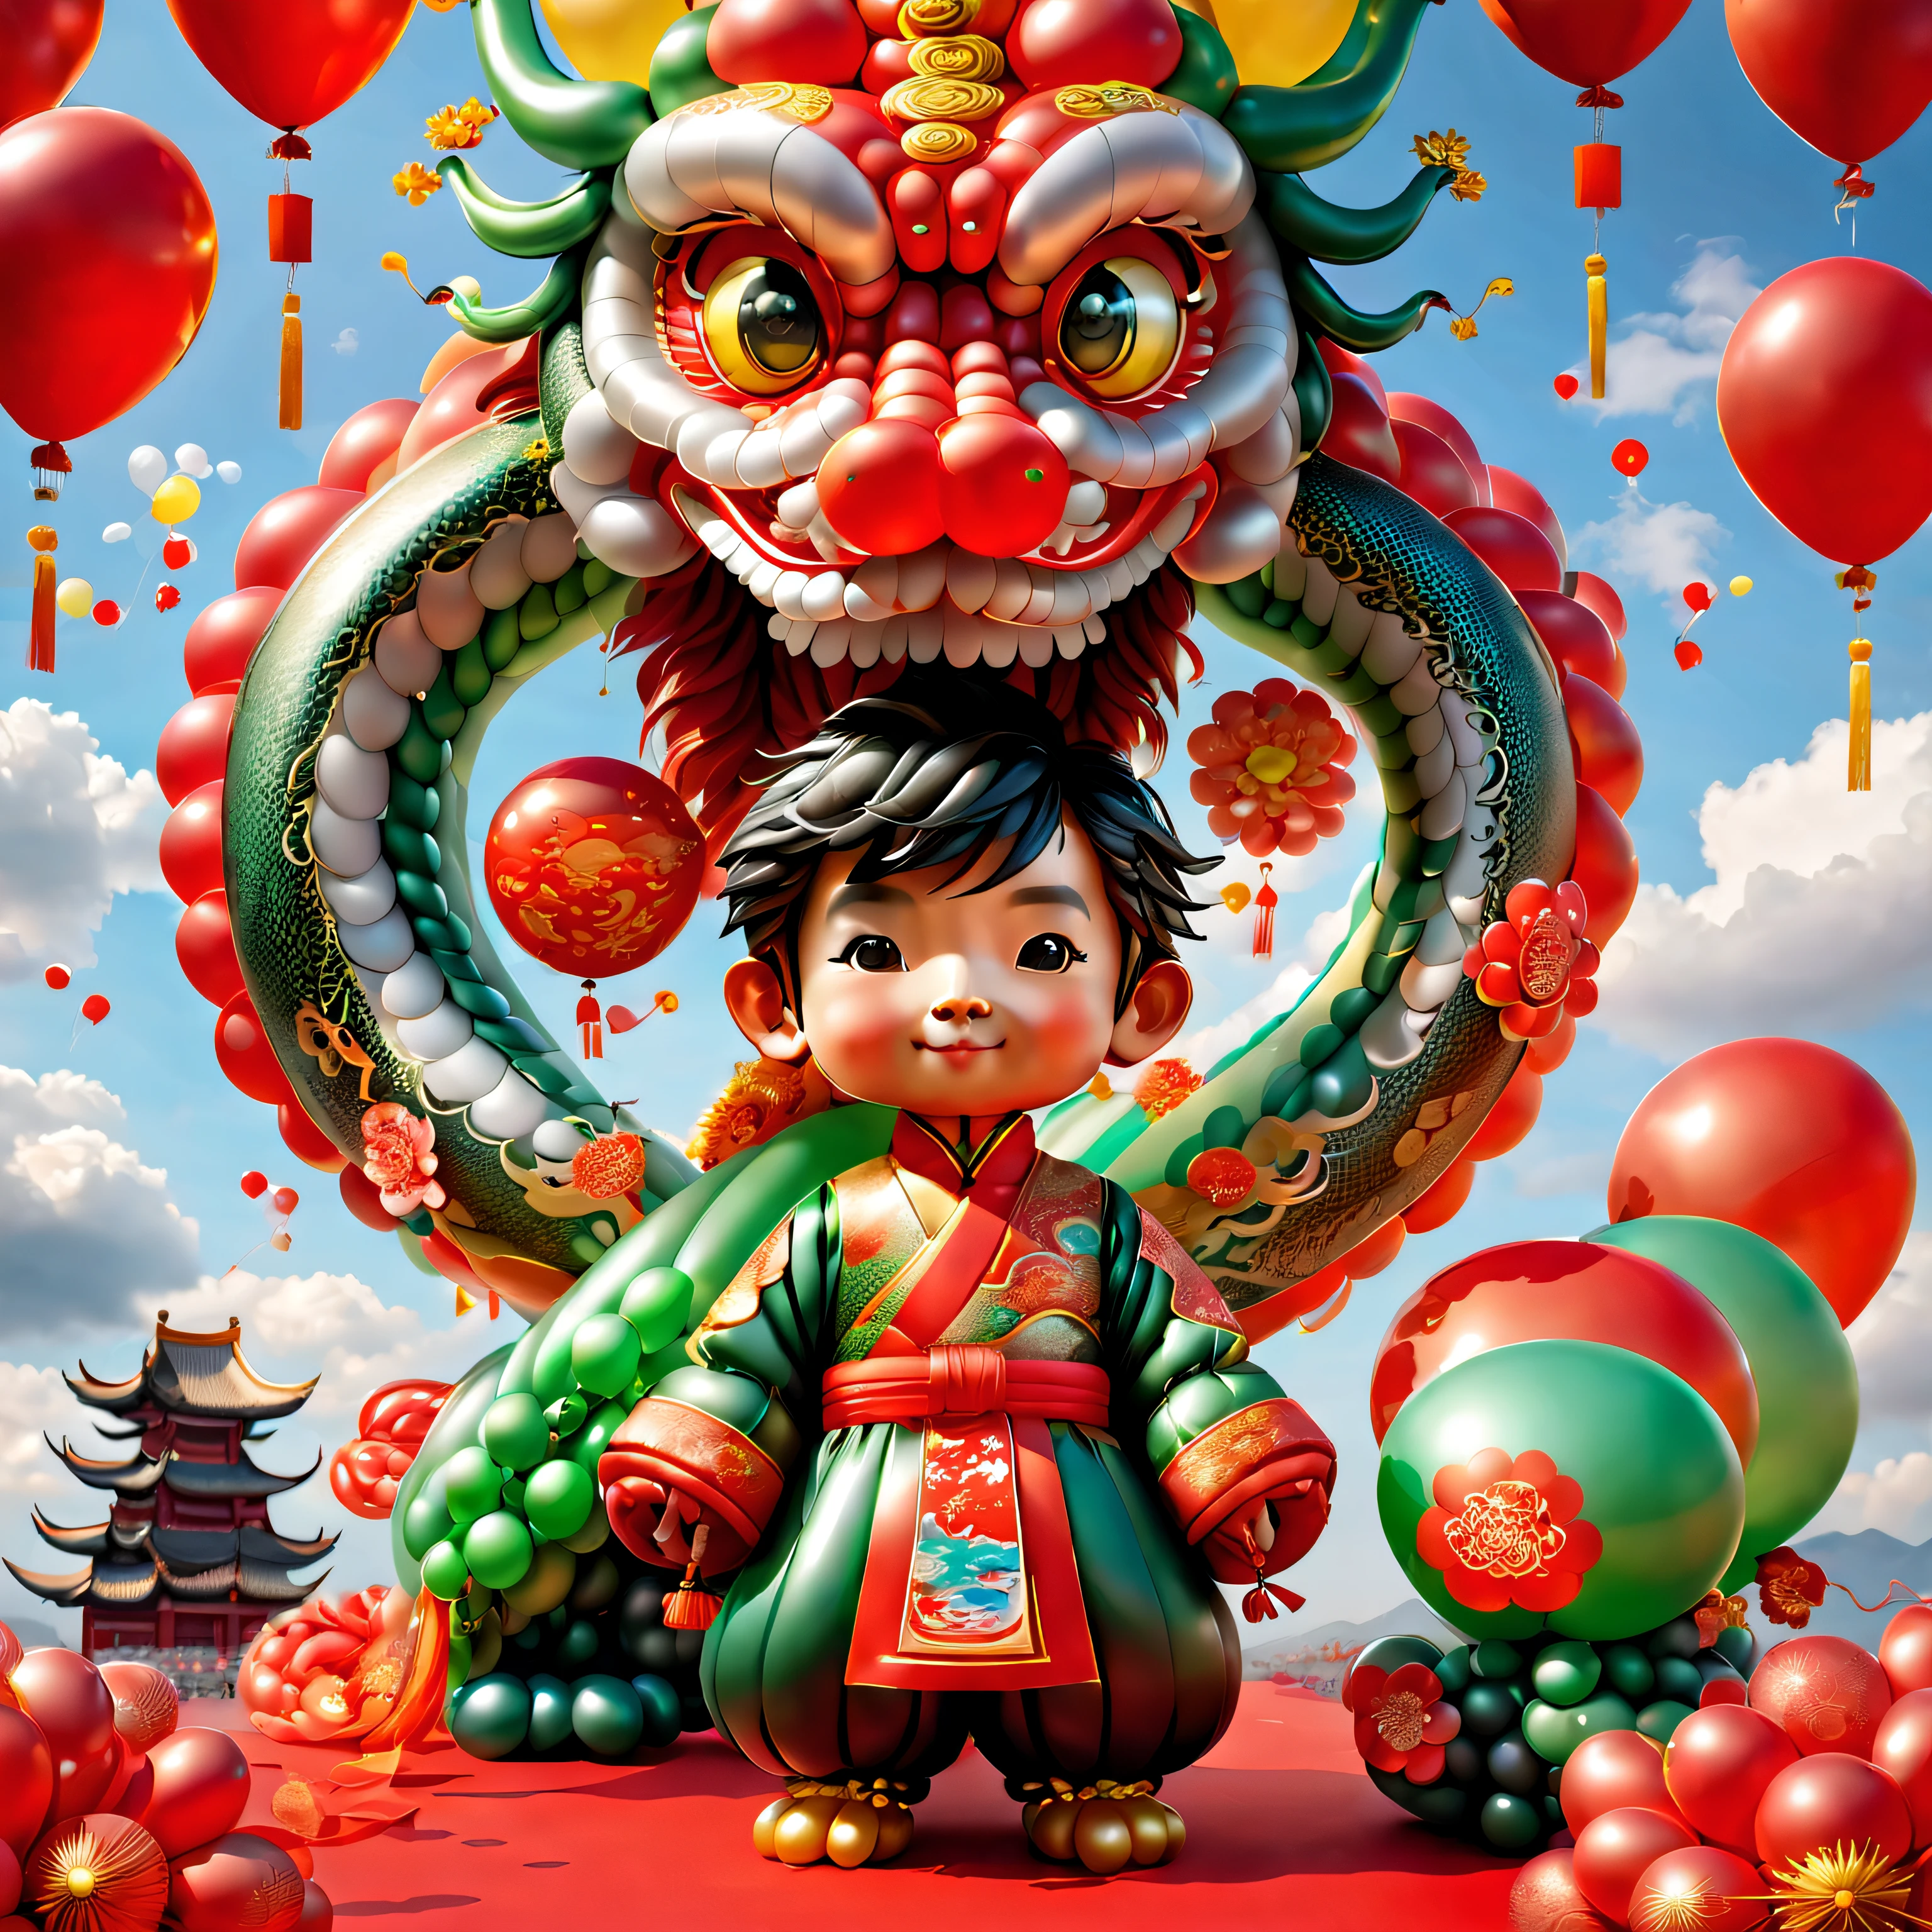 ((1 balão fofo e festivo, dragão chinês e um menino balão, vestindo roupas tradicionais chinesas feitas de balões, UE5, fogos de artifício, nuvens auspiciosas, fundo vermelho)), Arte digital fofa e detalhada, linda pintura digital, Pinguim de balão fofo, Linda arte detalhada, renderização 3d fofa, pintura digital muito detalhada, bonito e colorido, lindos seios grandes, arte digital altamente detalhada, rico em detalhes、infinidade de cores